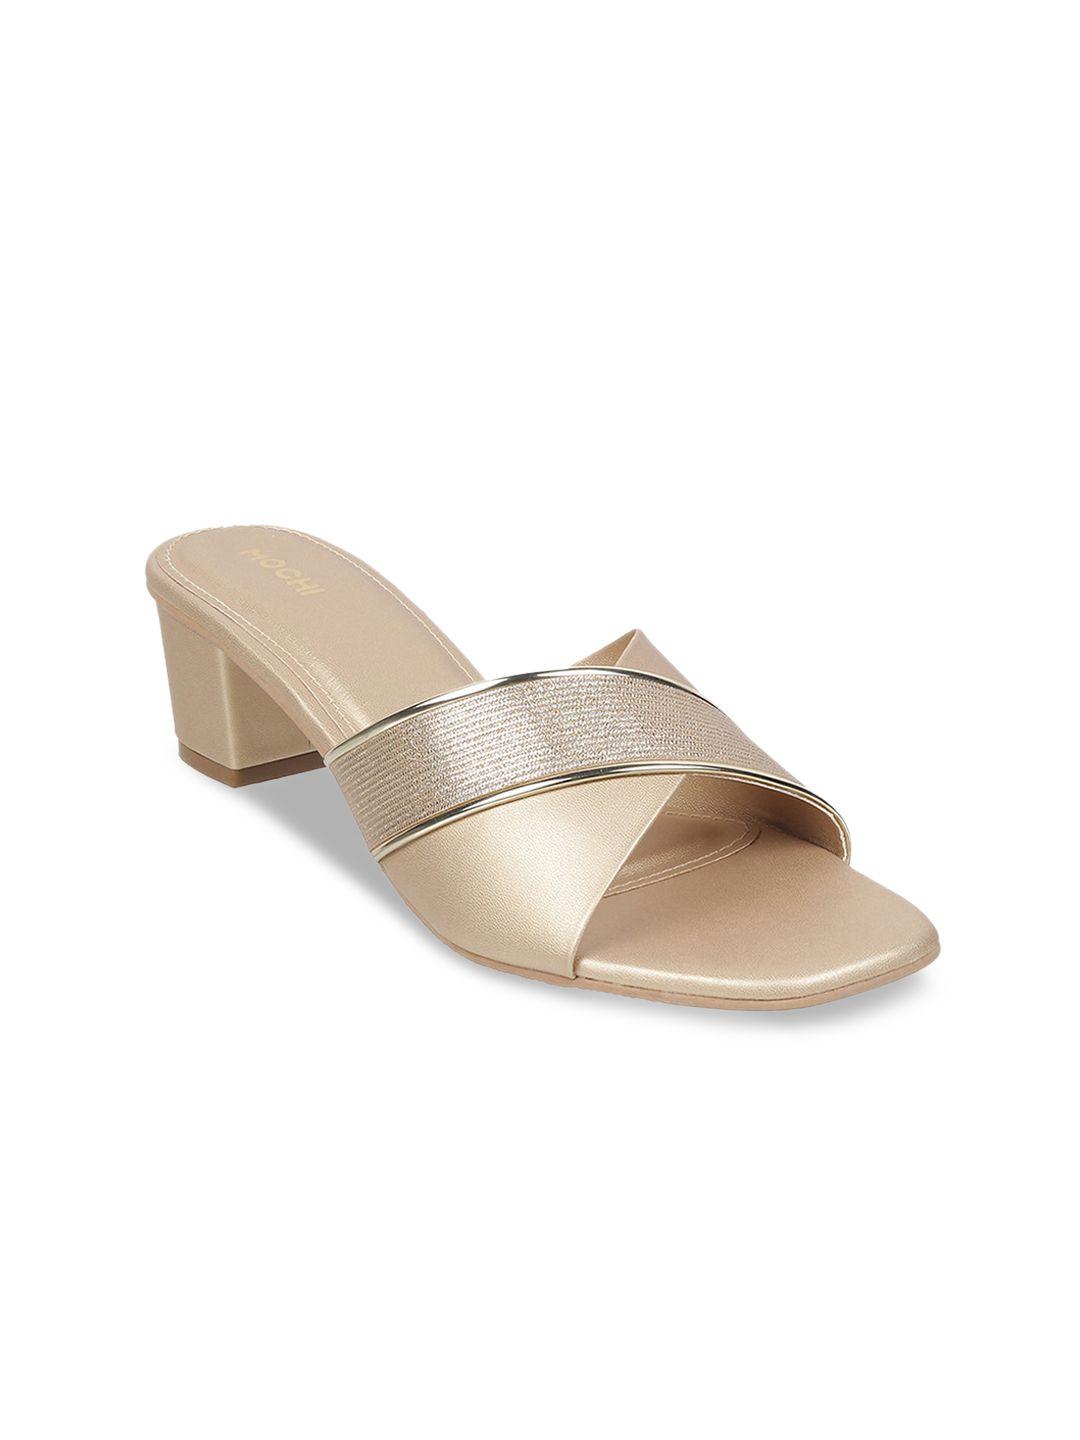 mochi-embellished-open-toe-block-heels